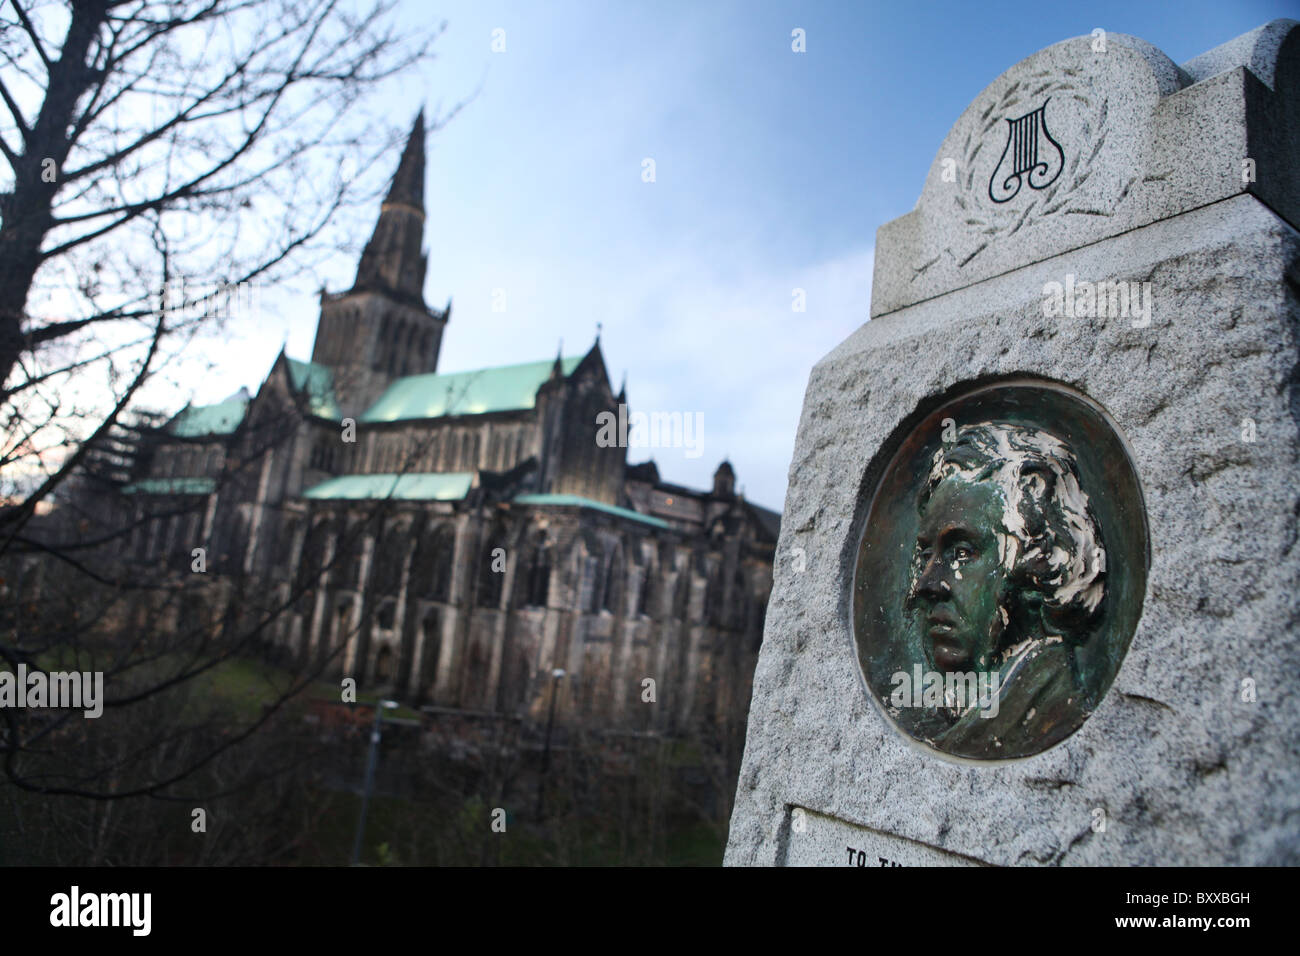 Une vue de la nécropole, montrant le monument à William Miller et la cathédrale de Glasgow dans l'arrière-plan, à Glasgow, en Écosse. Banque D'Images